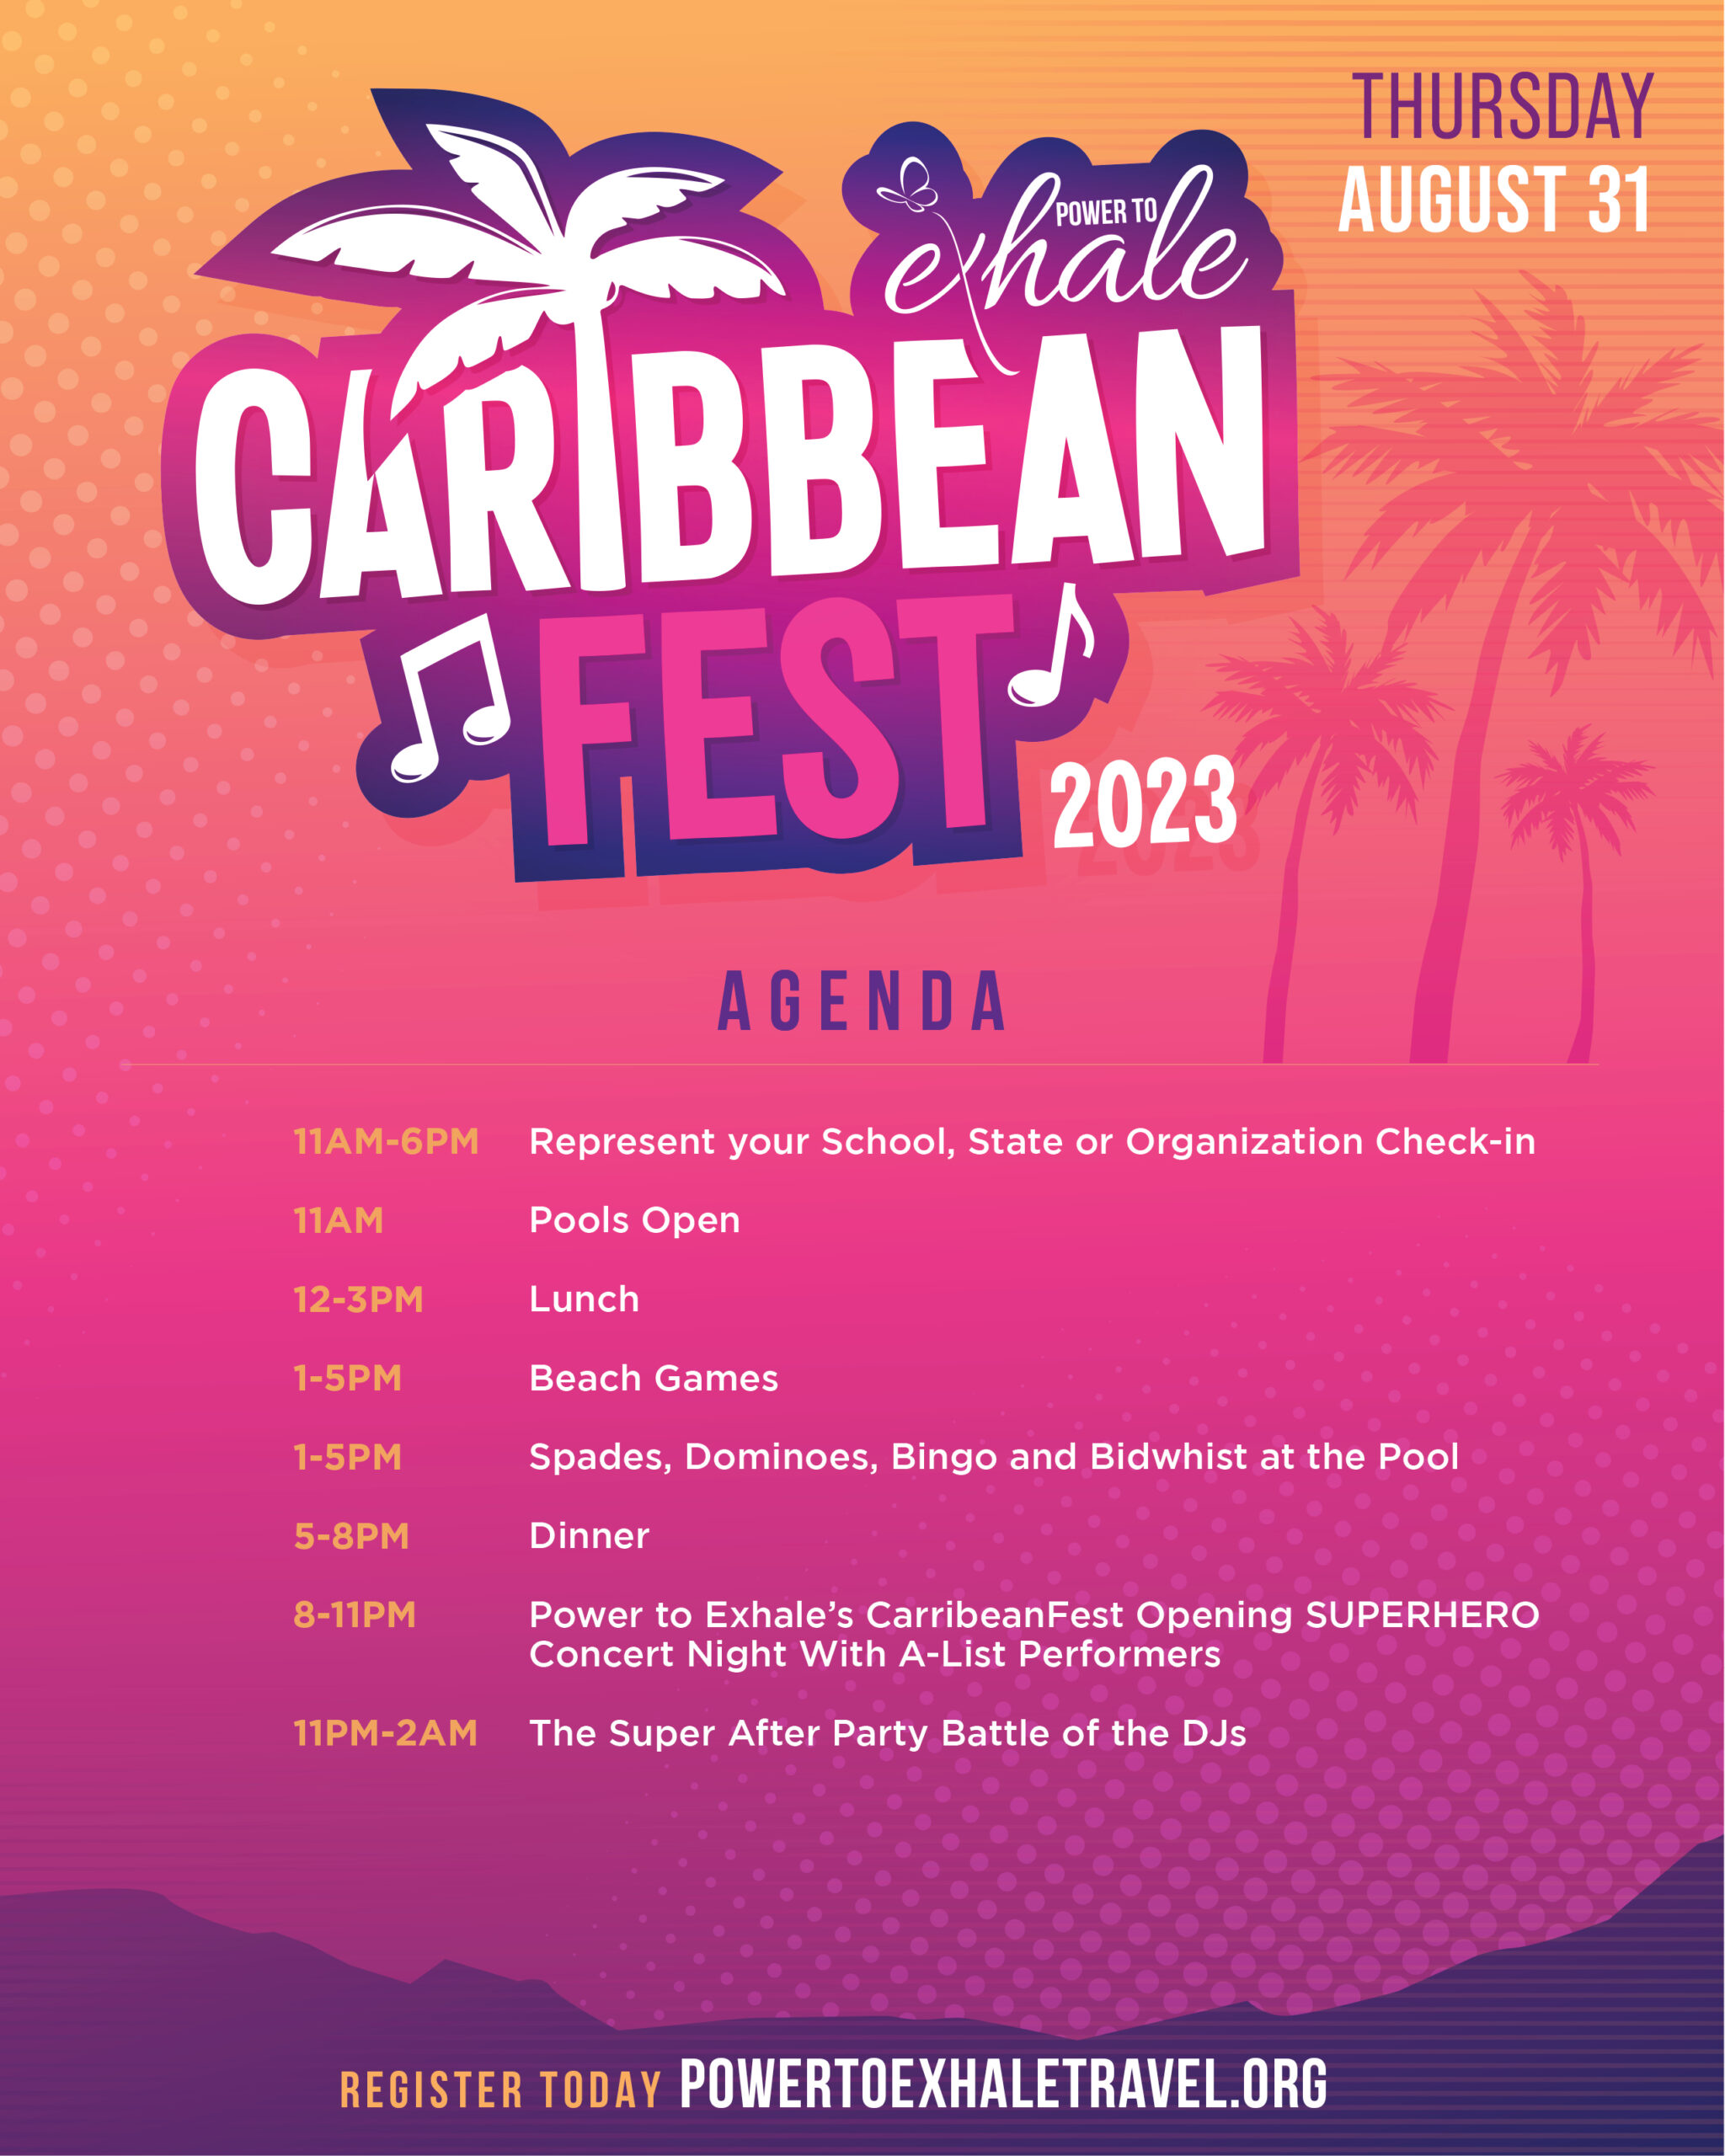 Flyer_CaribbeanFest_Agenda_Thur